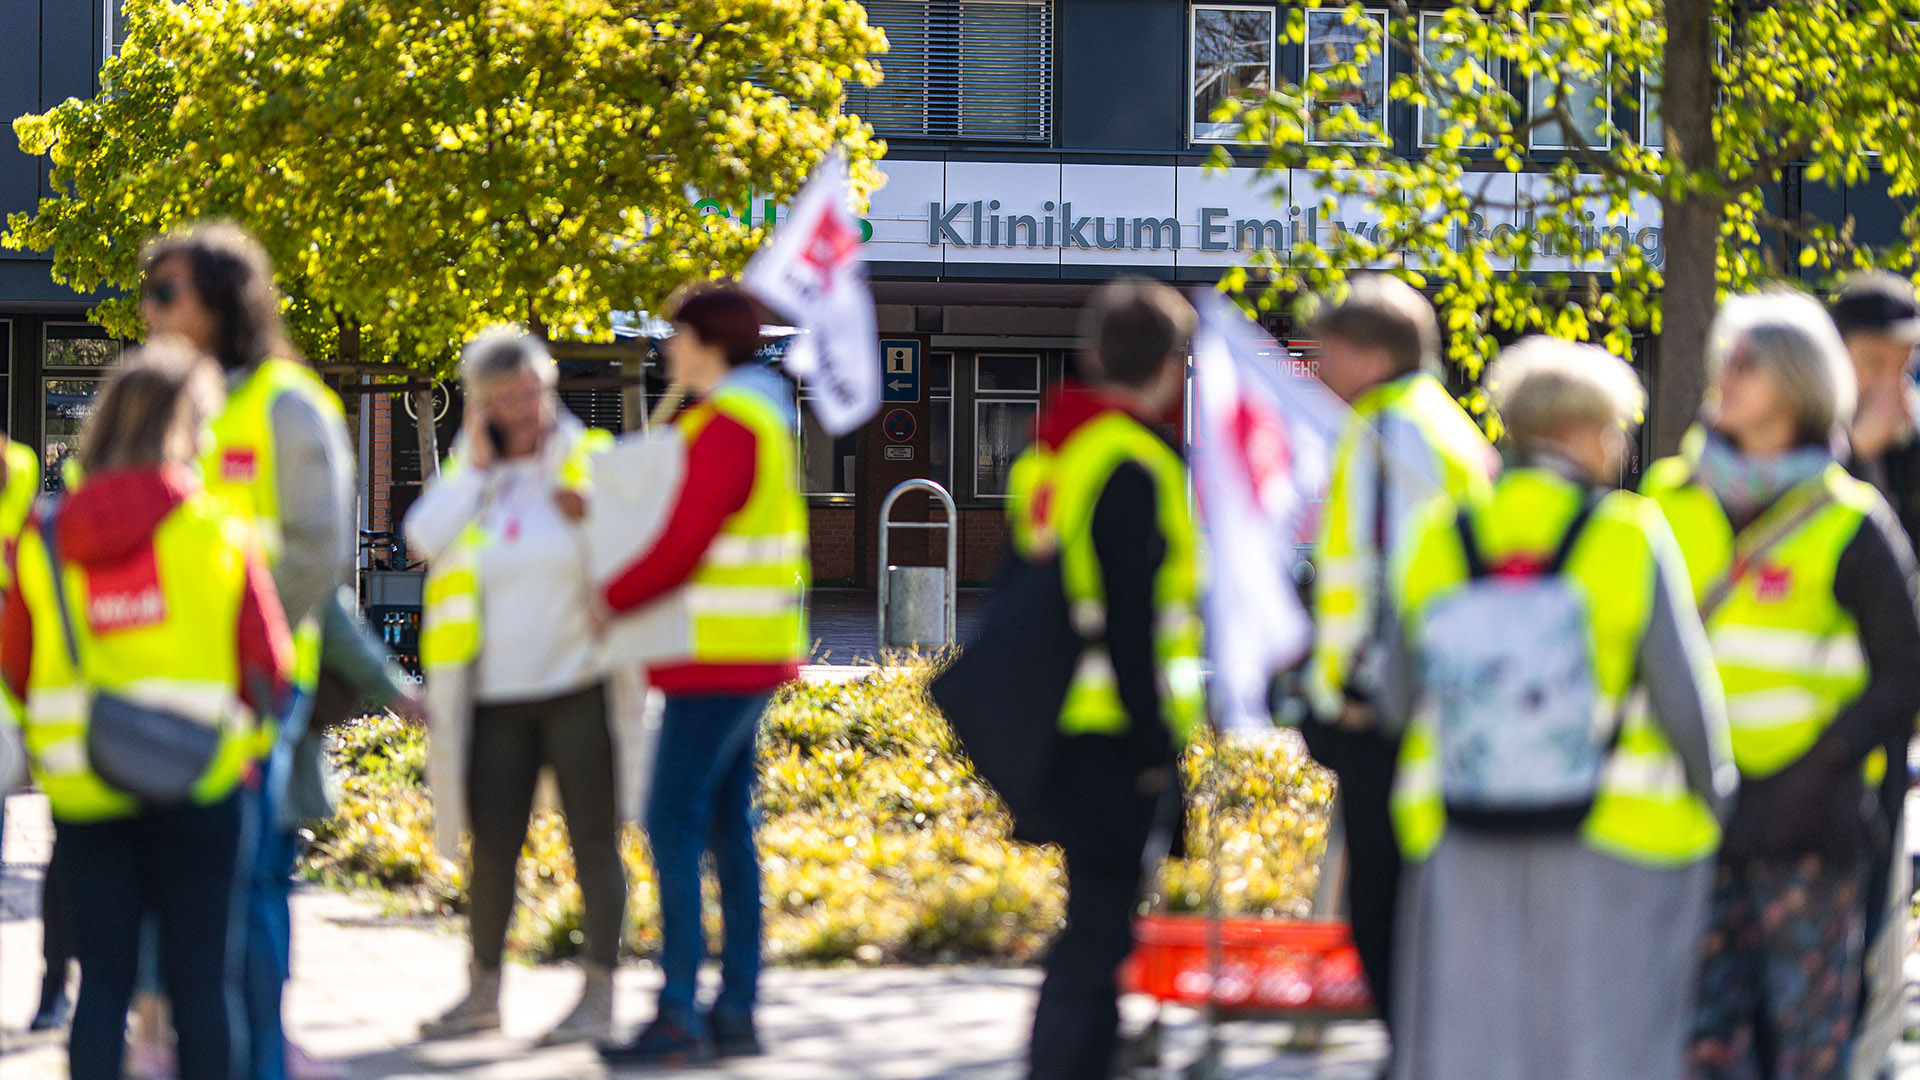 Archivbild: Krankenhaus- / Klinik-Personal streikt in Berlin. (Quelle: dpa/R. Keuenhof)